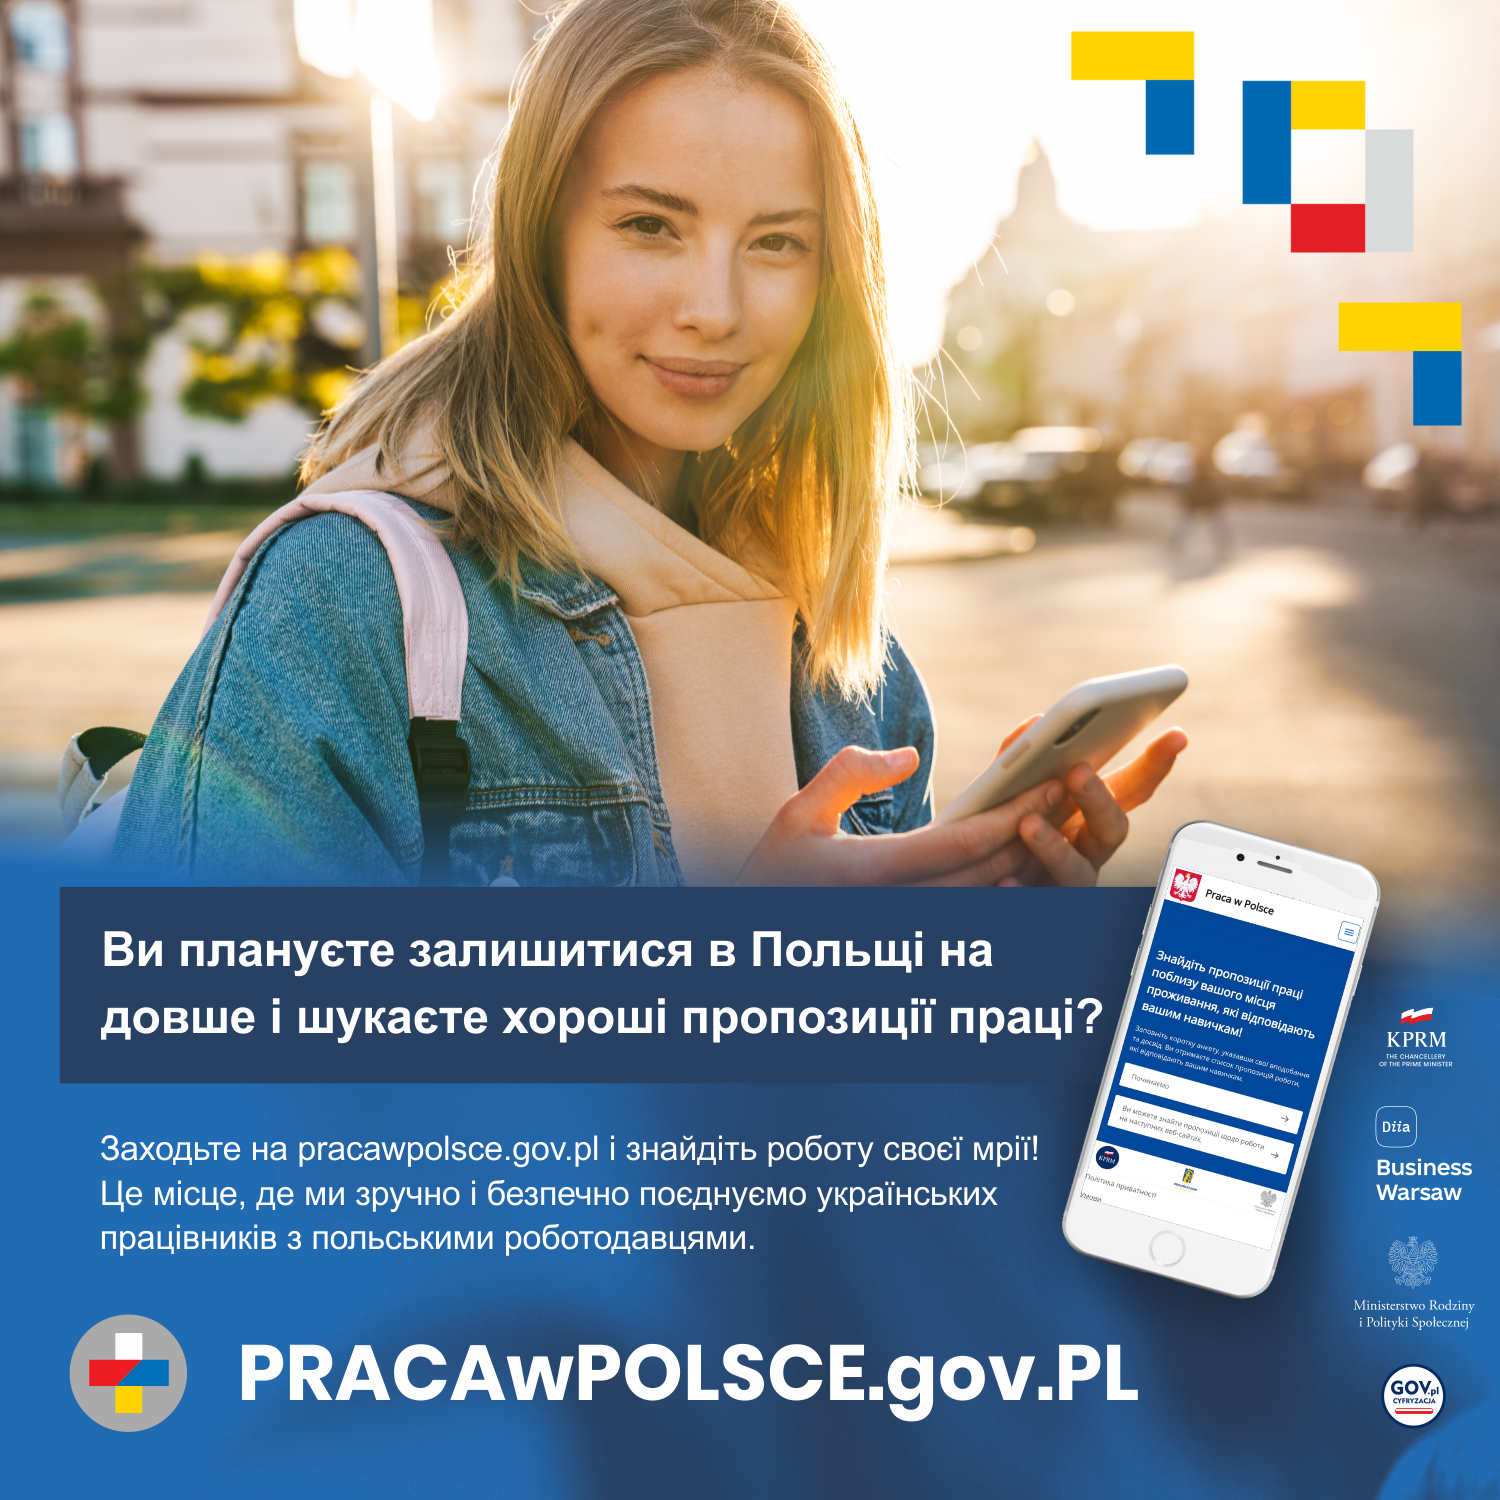 Platforma z ofertami pracy dla obywateli Ukrainy przebywających w Polsce pracawpolsce.gov.pl